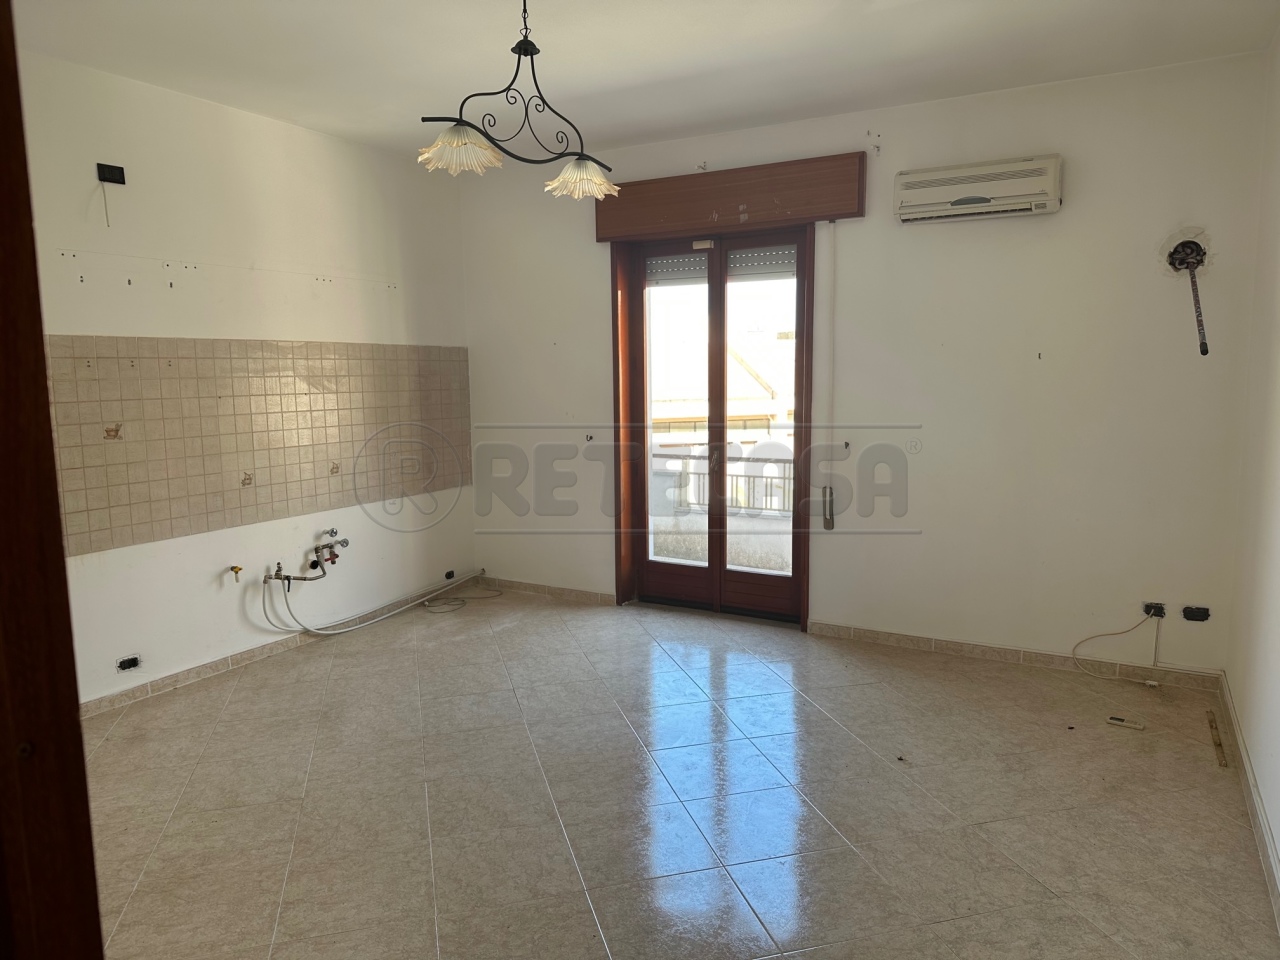 Appartamento in vendita a Mazara del Vallo, 5 locali, prezzo € 59.000 | PortaleAgenzieImmobiliari.it